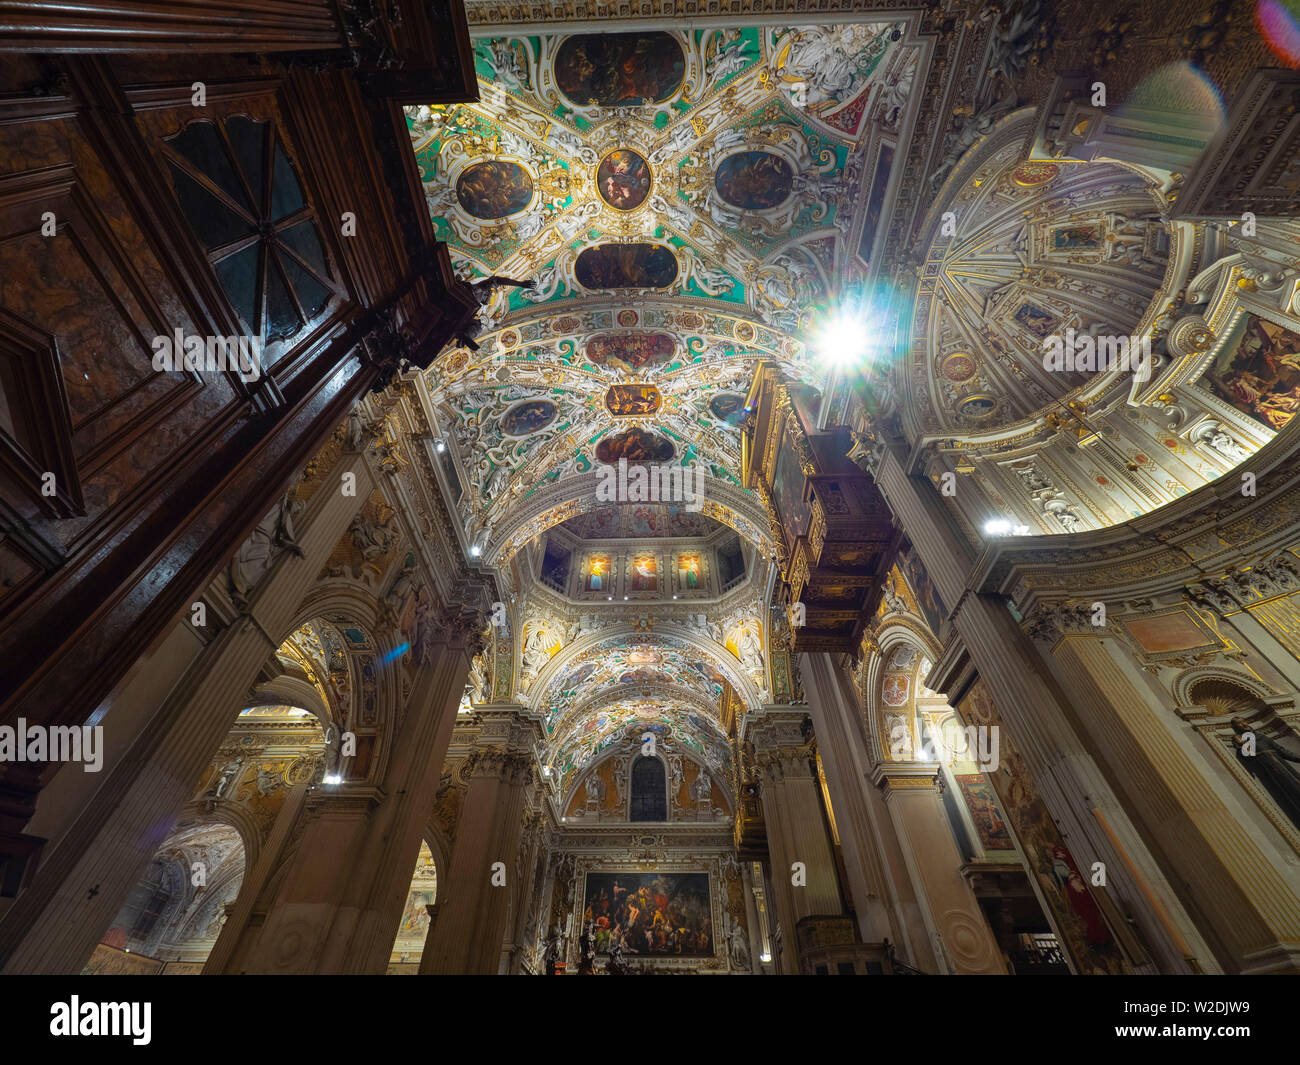 Interior de la Basilica di Santa Maria Maggiore. La iglesia es la arquitectura románica en el interior, la decoración es en gran medida de la renova barroco del siglo XVII. Foto de stock